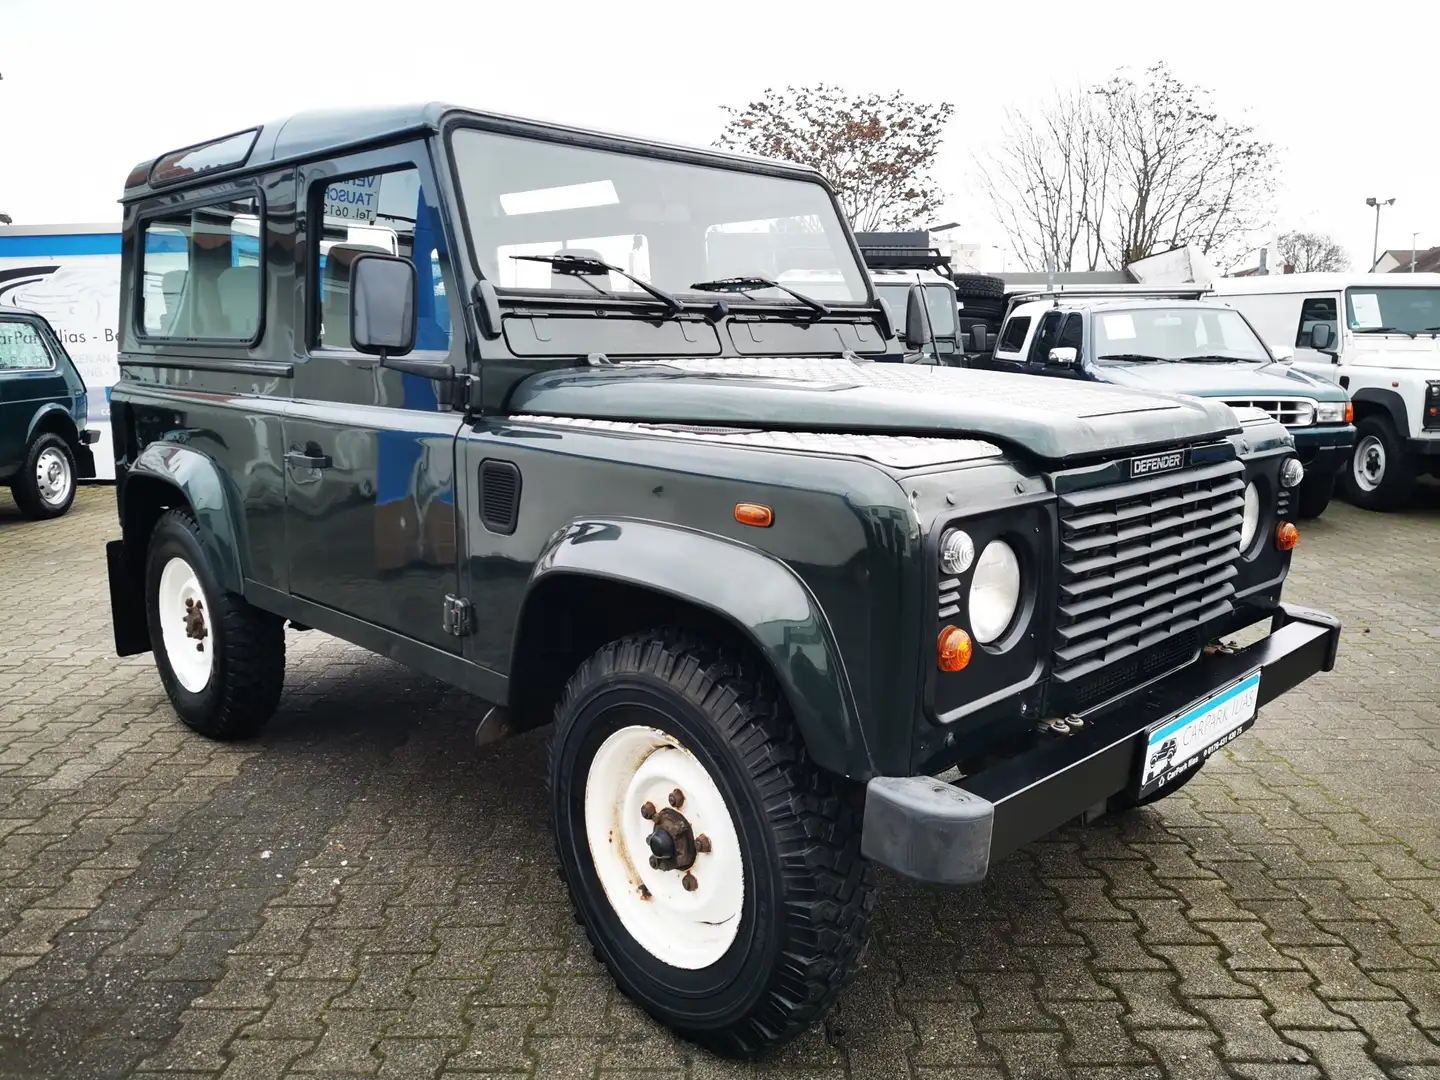 Land Rover Defender SUV/Geländewagen/Pickup in Grün gebraucht in  Mainz-Kostheim für € 28.900,-